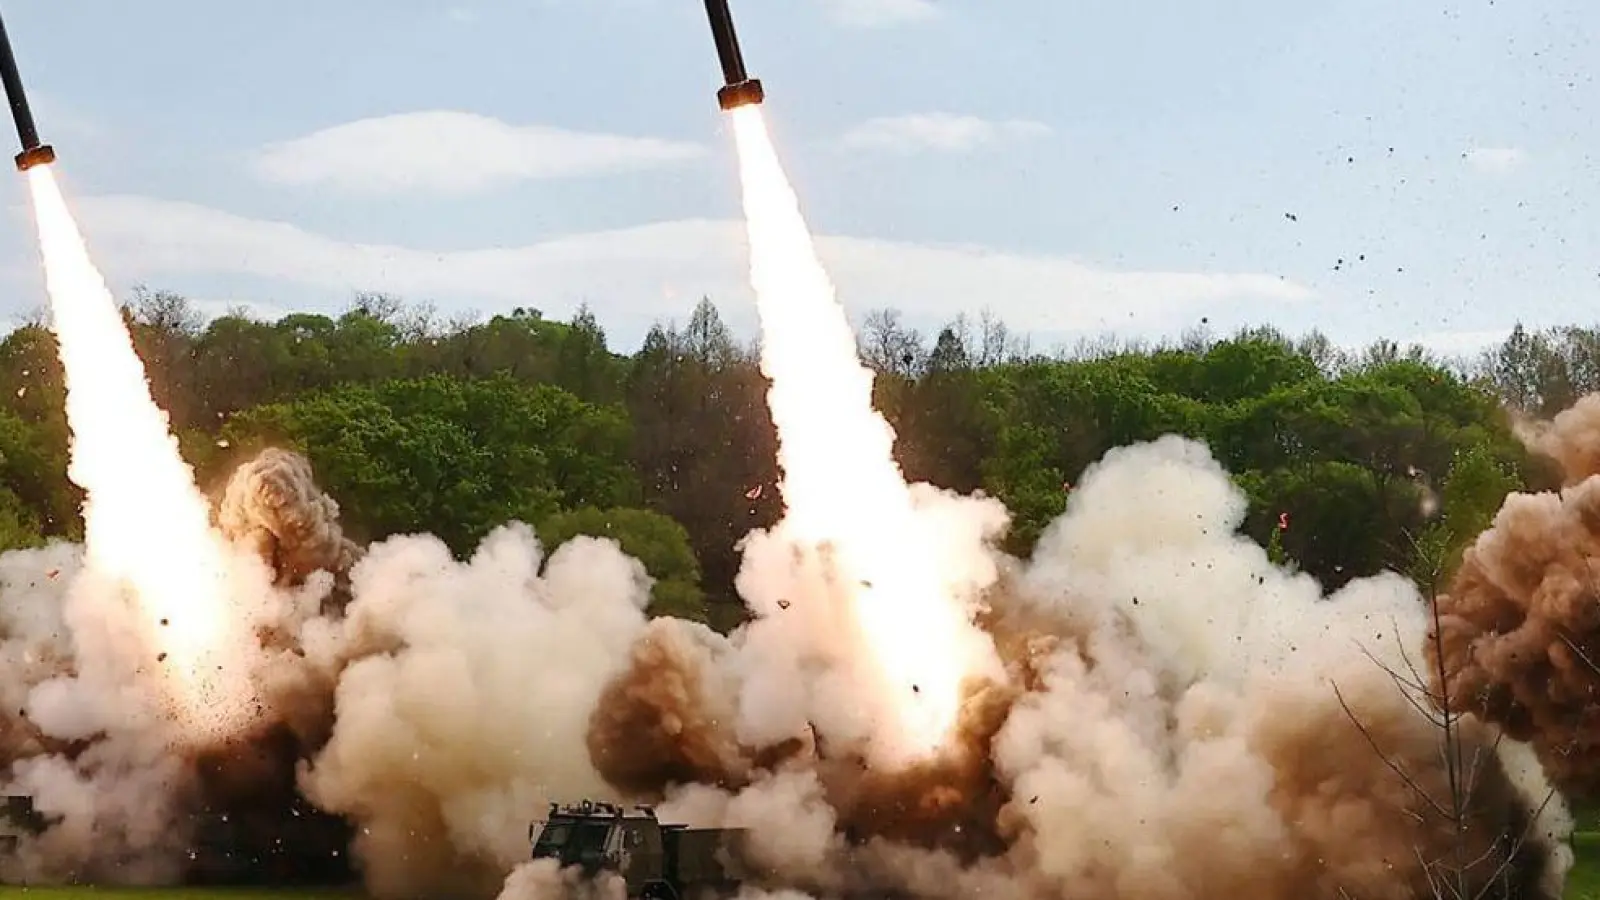 Die von der staatlichen nordkoreanischen Nachrichtenagentur ur Verfügung gestellte Aufnahme sollen eine Raketenübung an einem nicht genannten Ort zeigen. (Foto: KCNA/KNS/dpa)